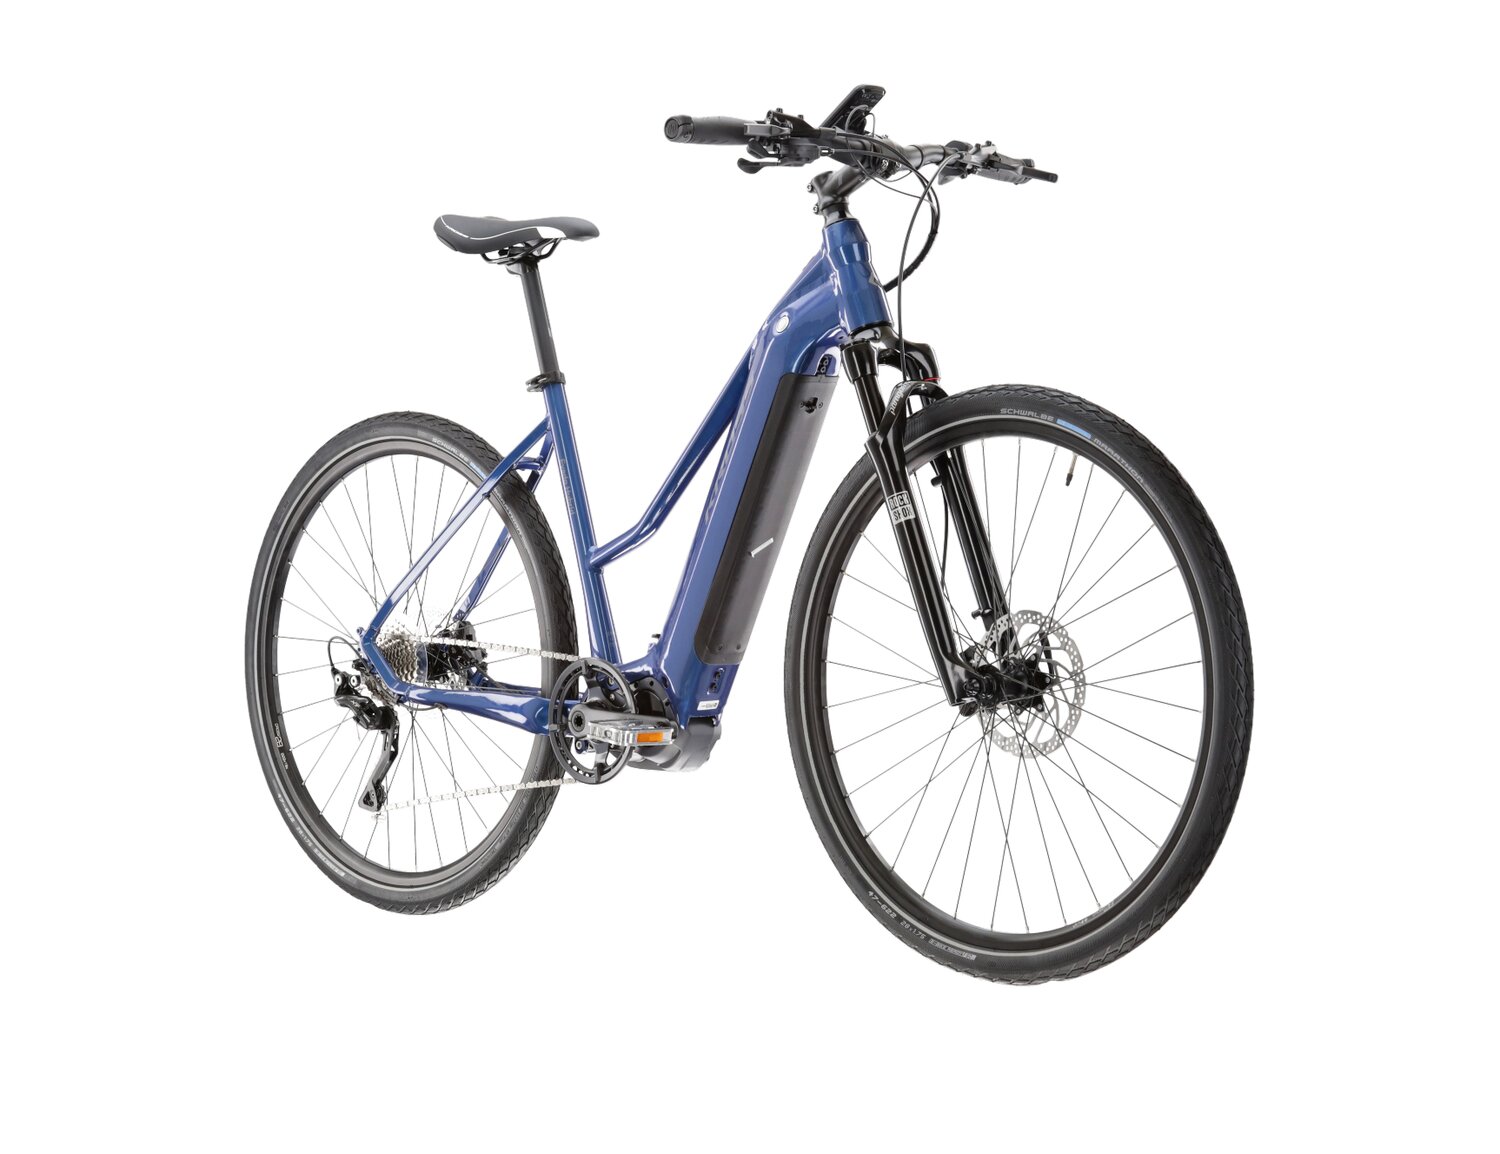  Elektryczny rower crossowy KROSS Evado Hybrid 6.0 630 Wh UNI na aluminiowej ramie w kolorze niebieskim wyposażony w osprzęt Shimano i napęd elektryczny Shimano